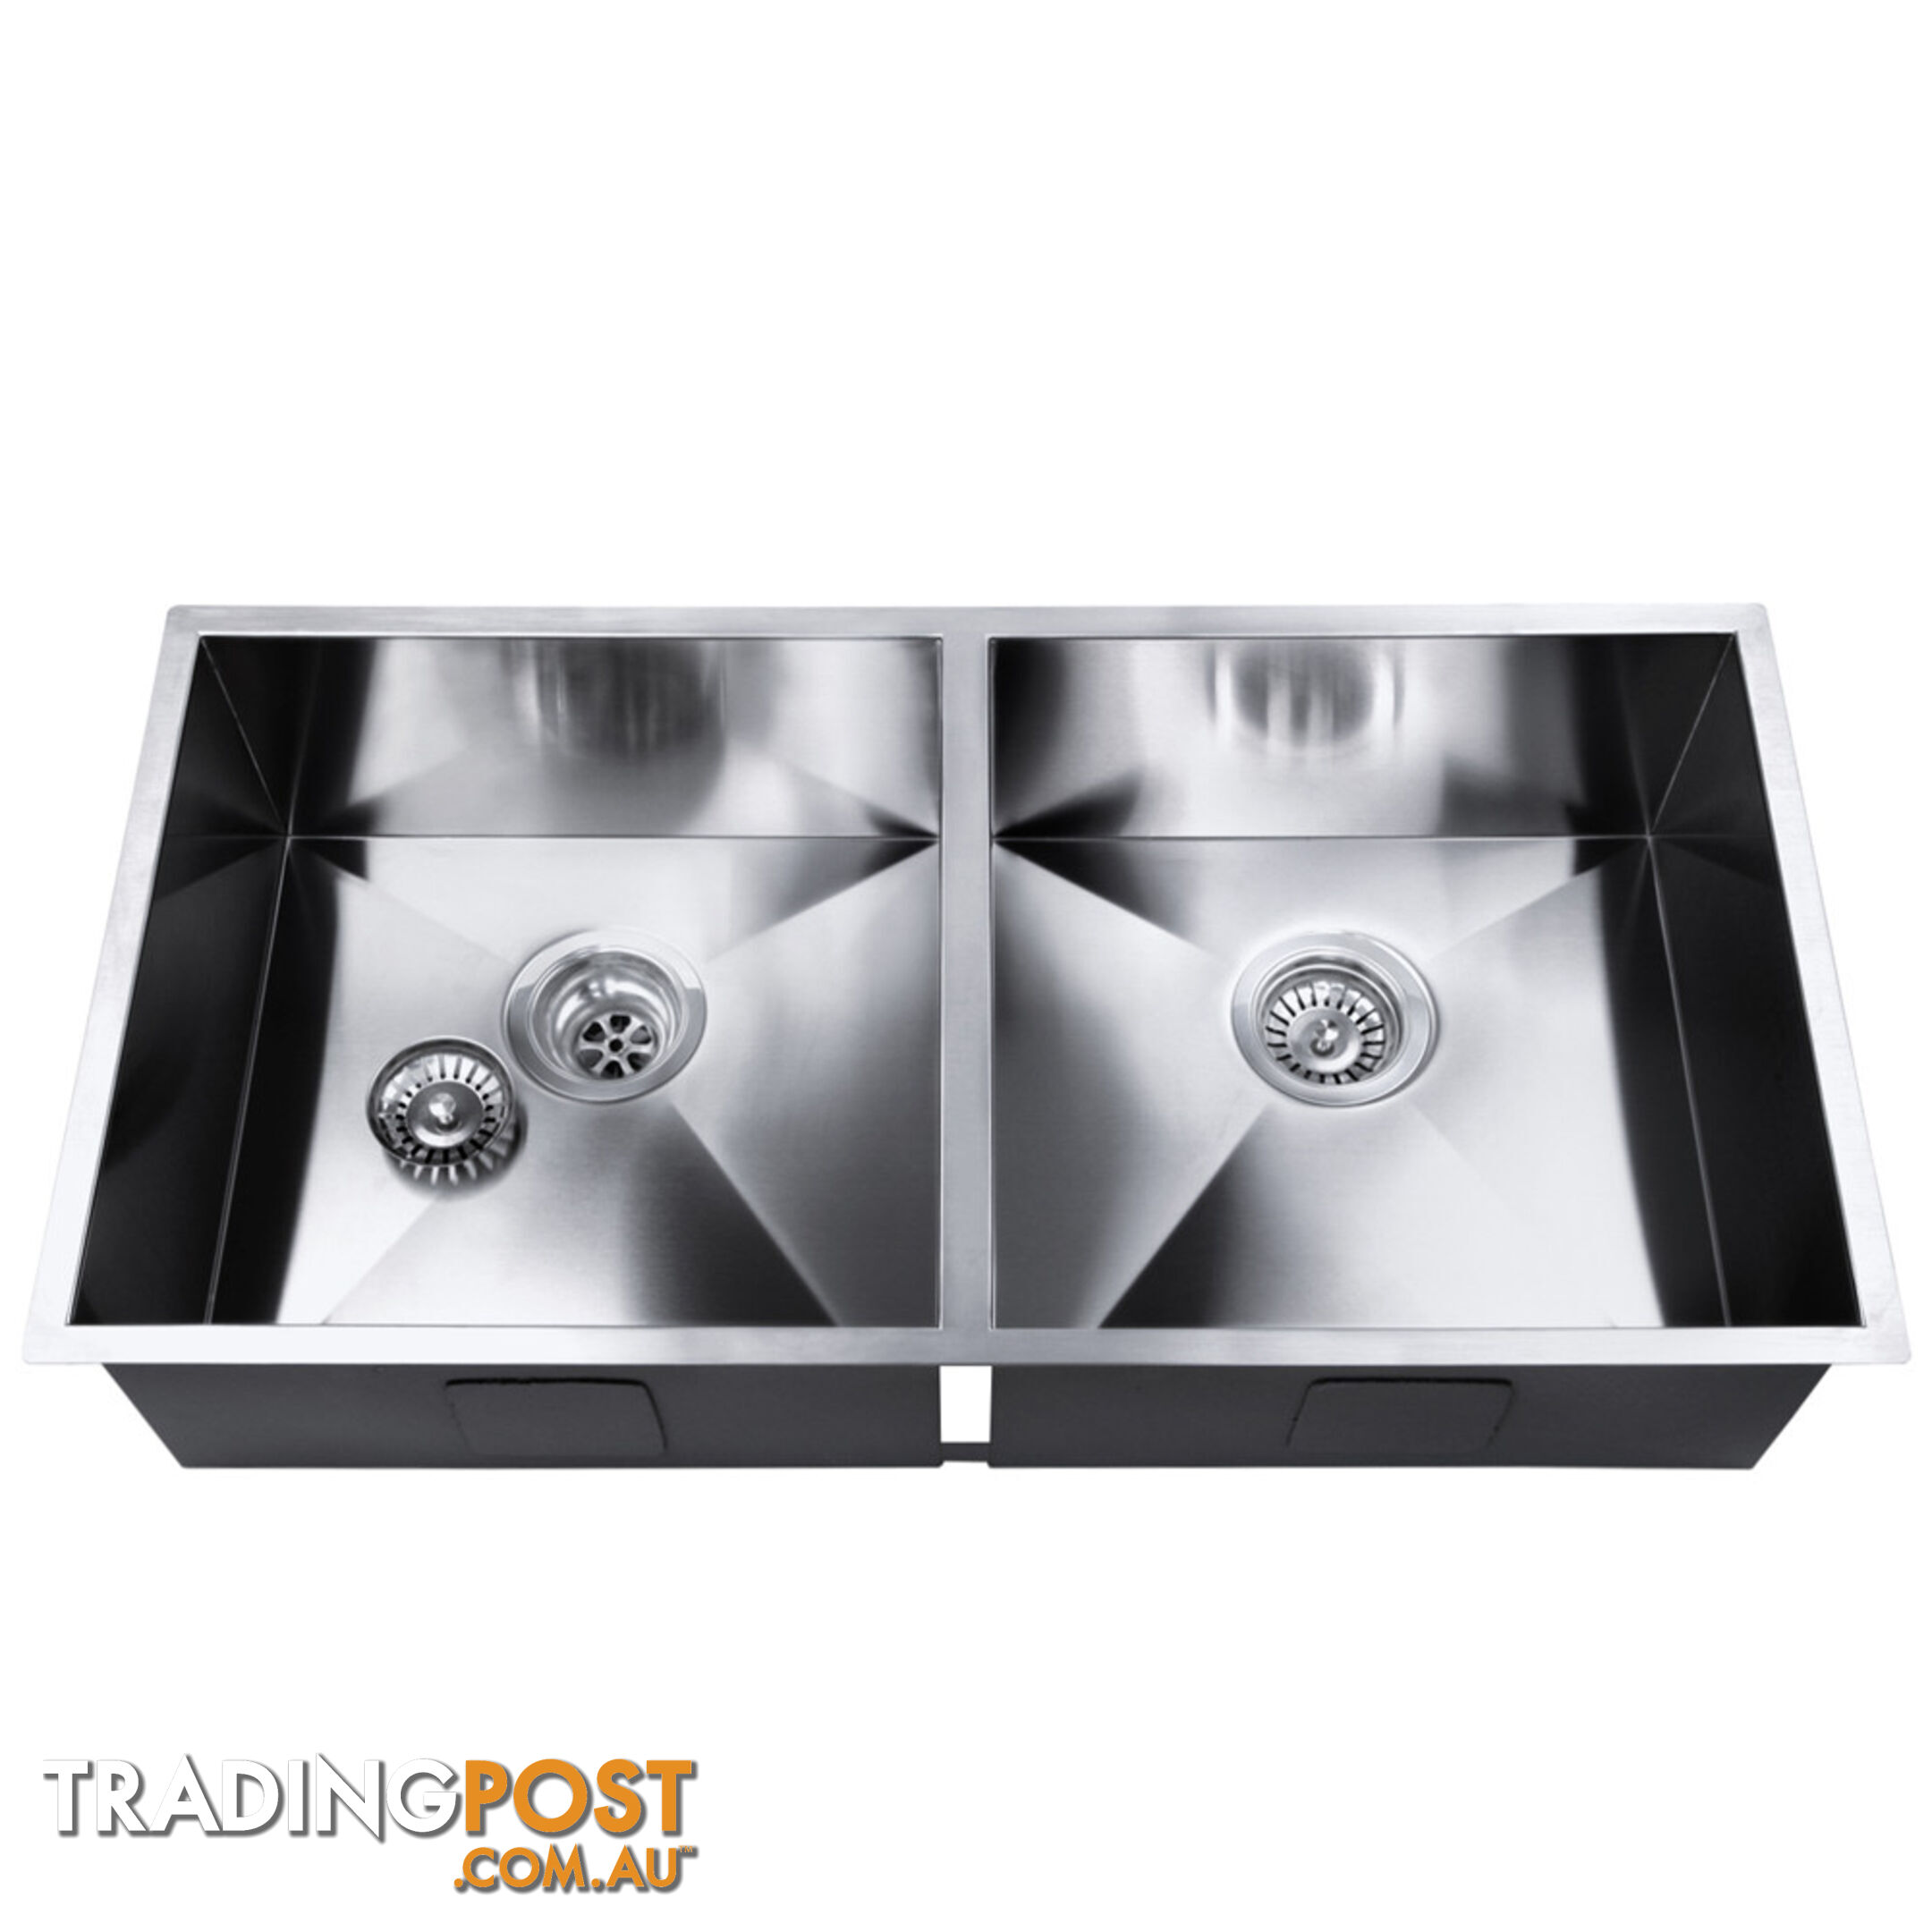 Stainless Steel Kitchen/Laundry Sink w/ Strainer Waste 870x450mm